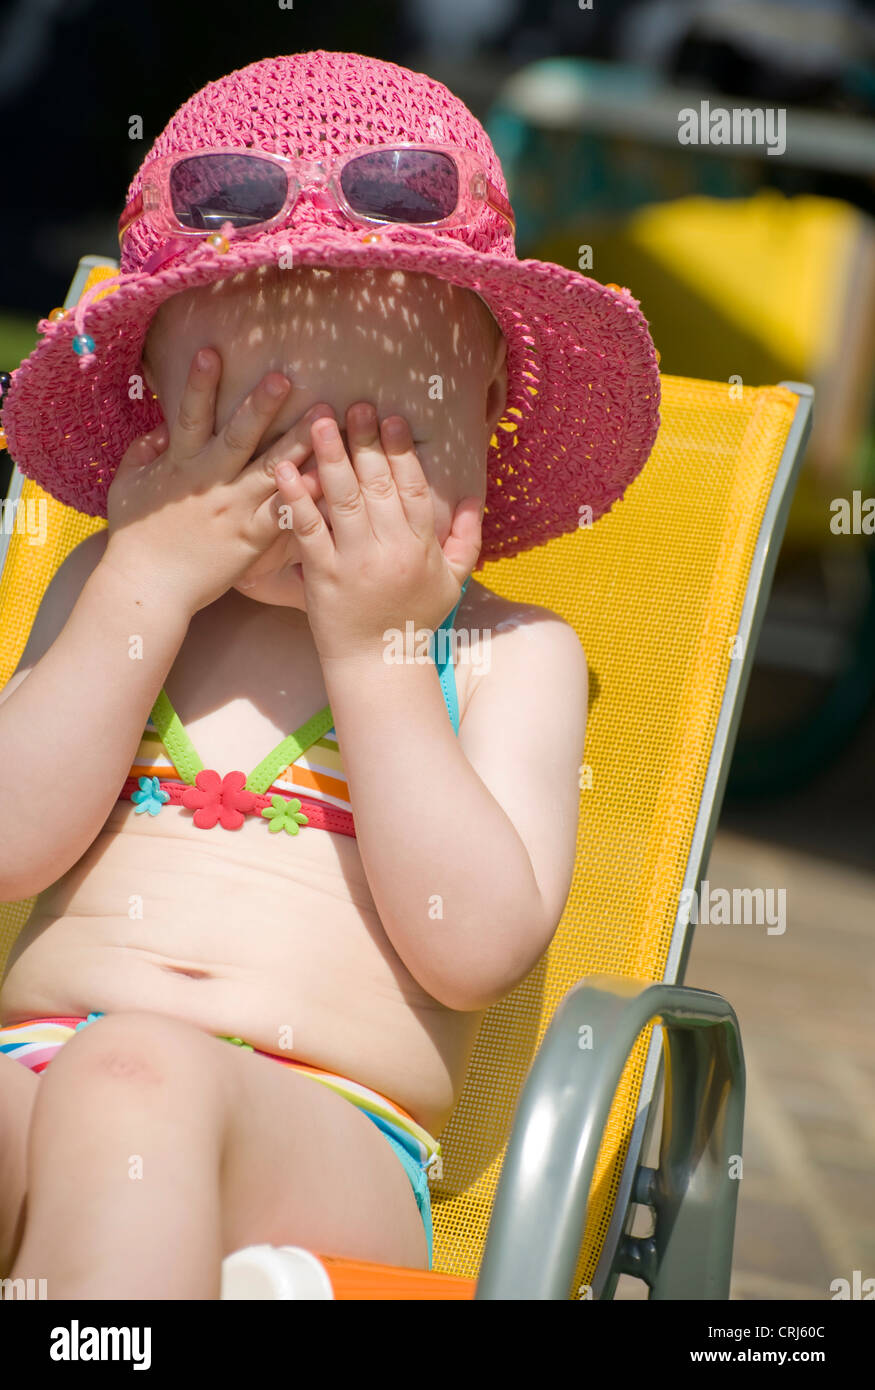 Niñas pequeñas en bikini fotografías e imágenes de alta resolución - Alamy